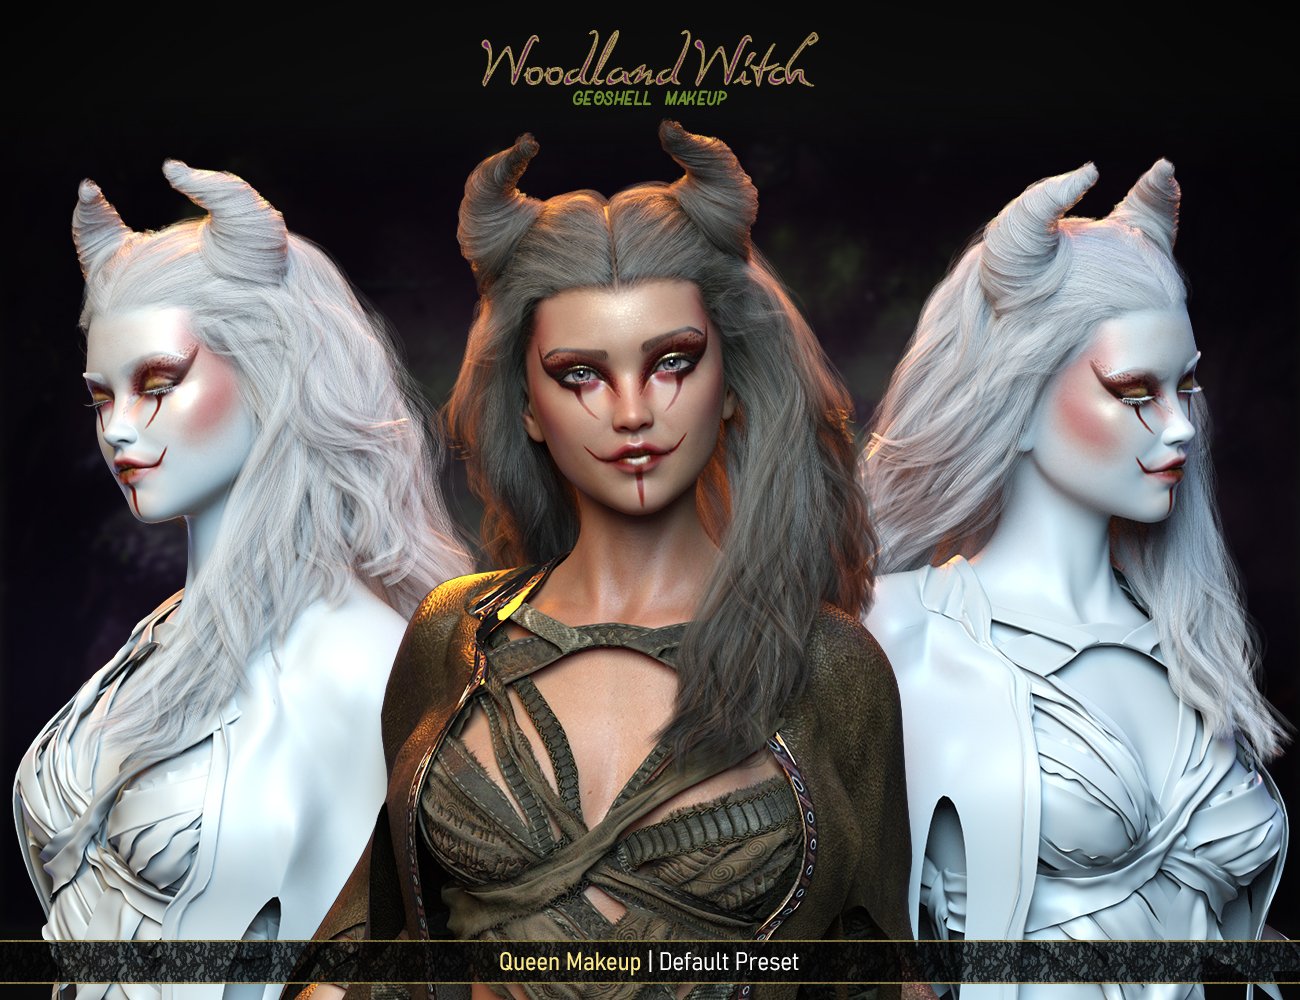 FPE Woodland Witch Geoshell Makeup for Genesis 8.1 Female by: FenixPhoenixEsid, 3D Models by Daz 3D